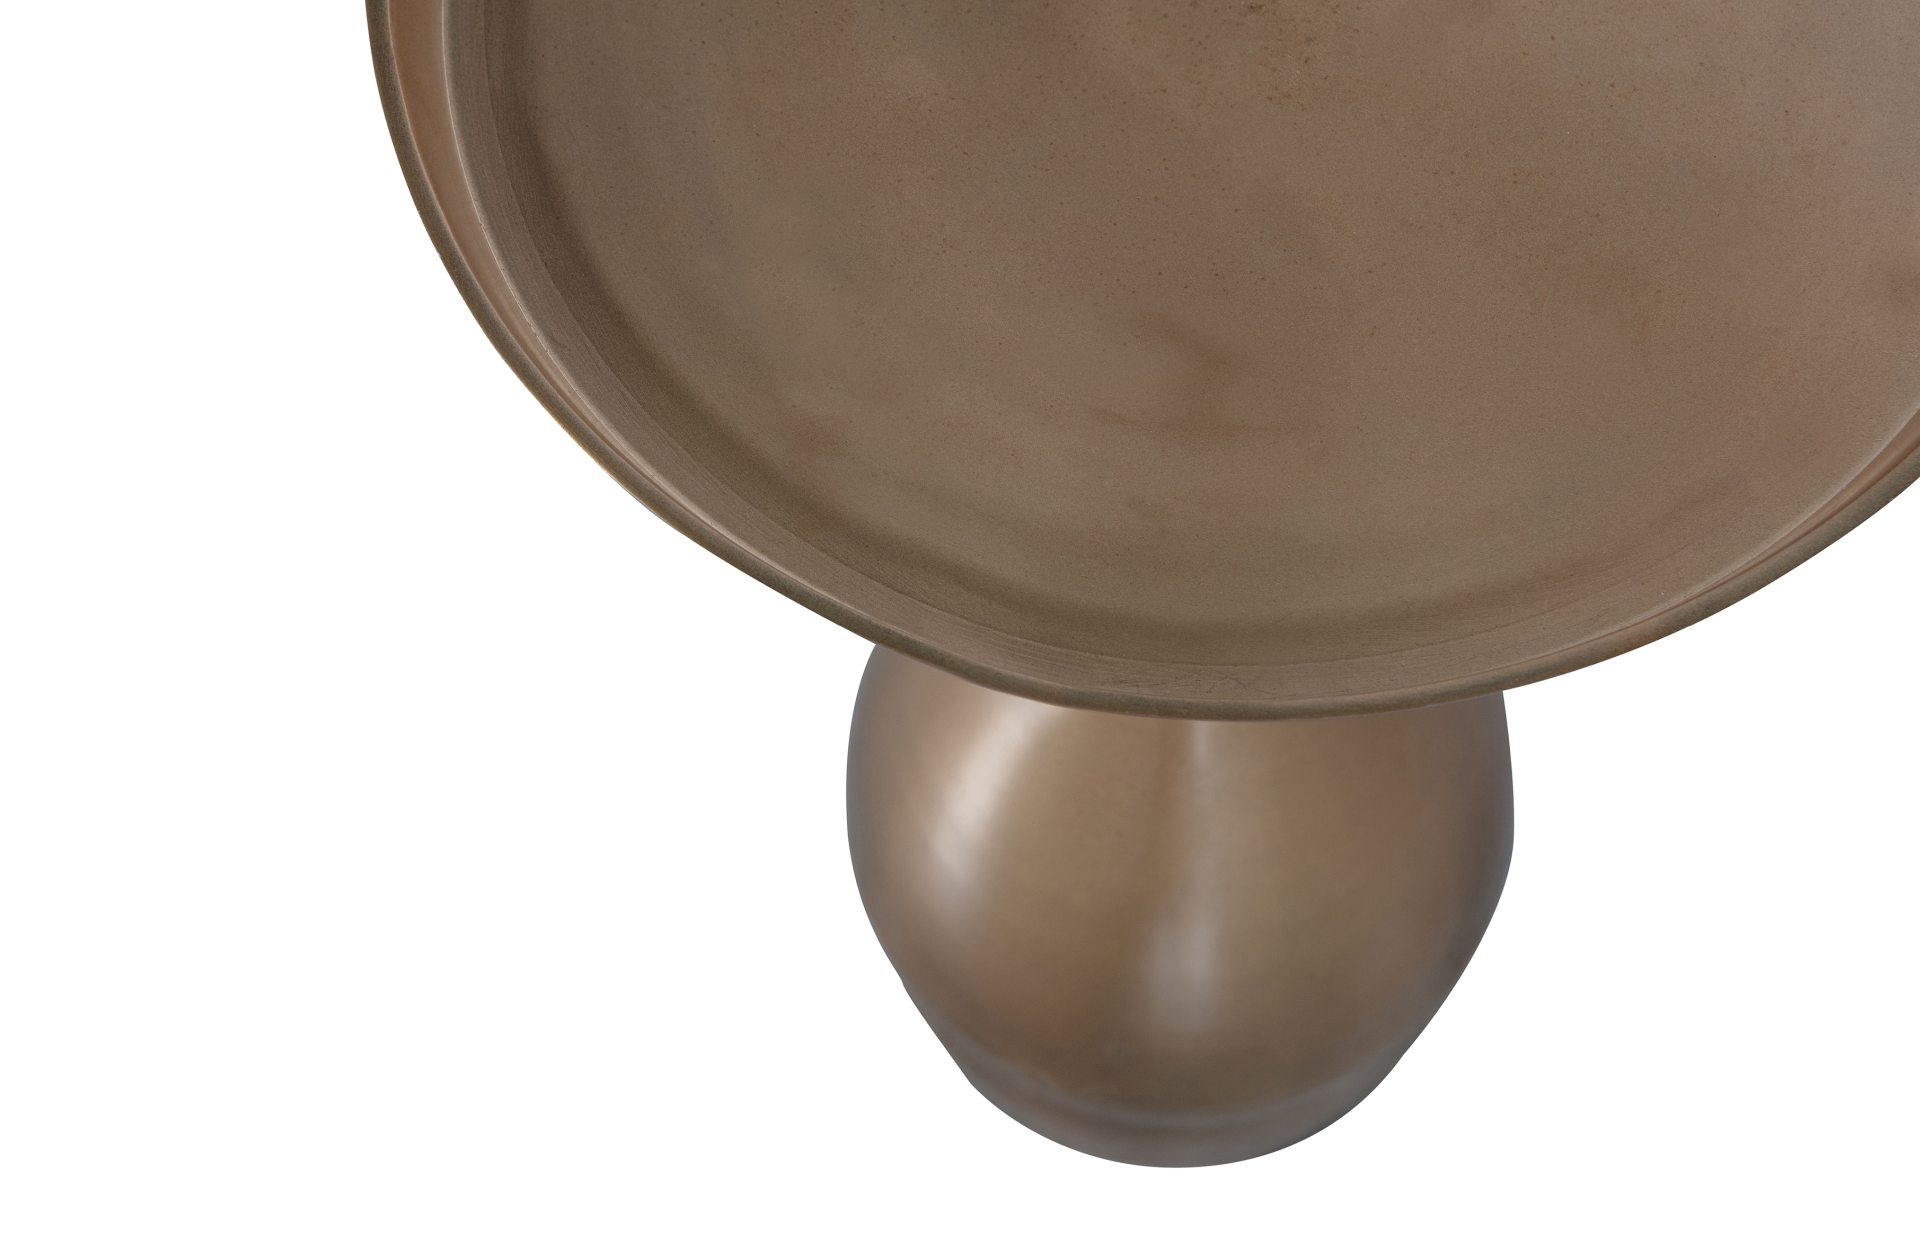 Der Beistelltisch Cone überzeugt mit seinem modernem Design. Gefertigt wurde der Tisch aus Metall, welches einen Antique Farbton besitzt.